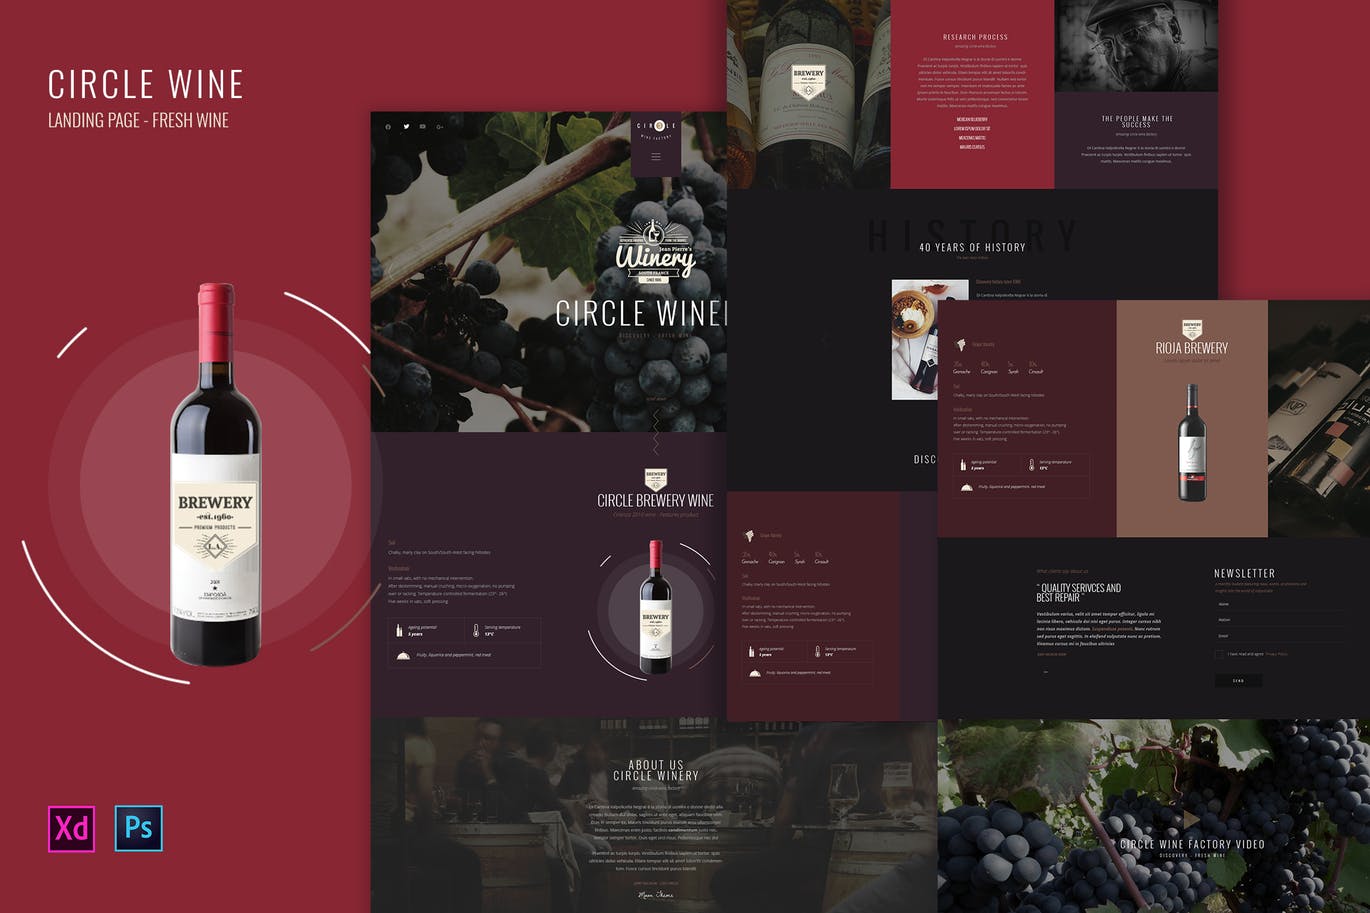 葡萄酒品牌官网设计PSD&XD模板 Circle Wine – Wine landing page product template插图